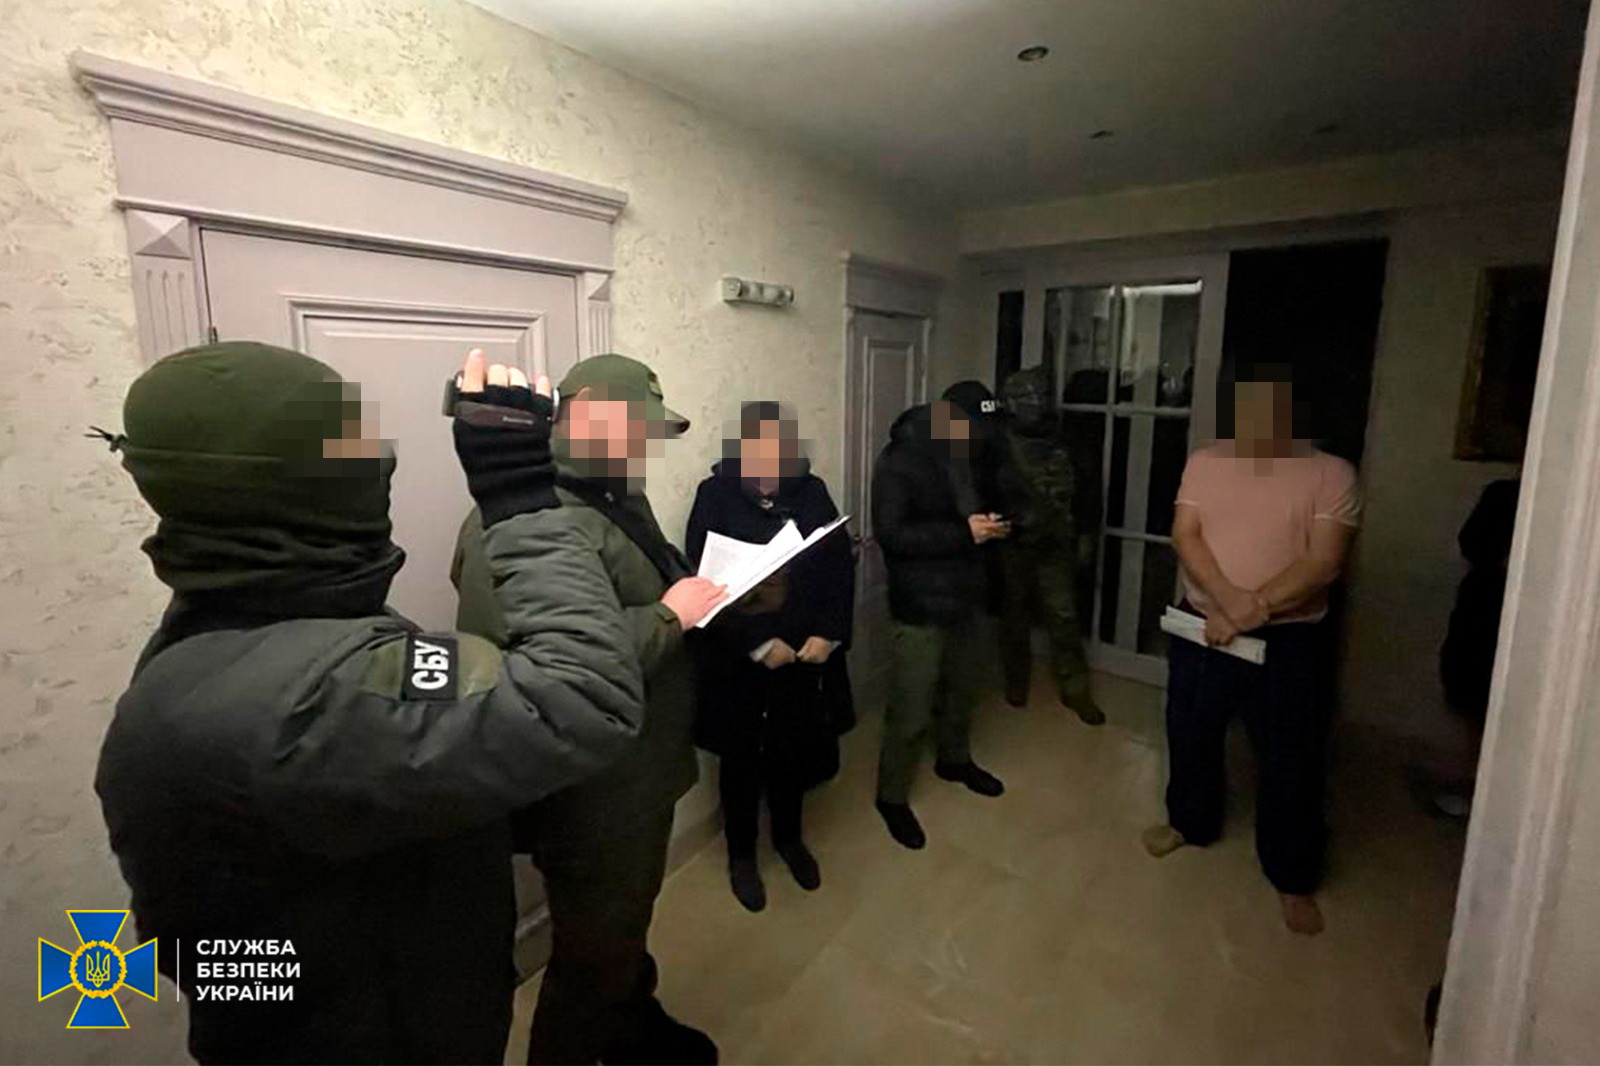 СБУ: компании Оксаны Марченко финансировали Росгвардию и МВД РФ, ей объявили подозрение - 3 - изображение